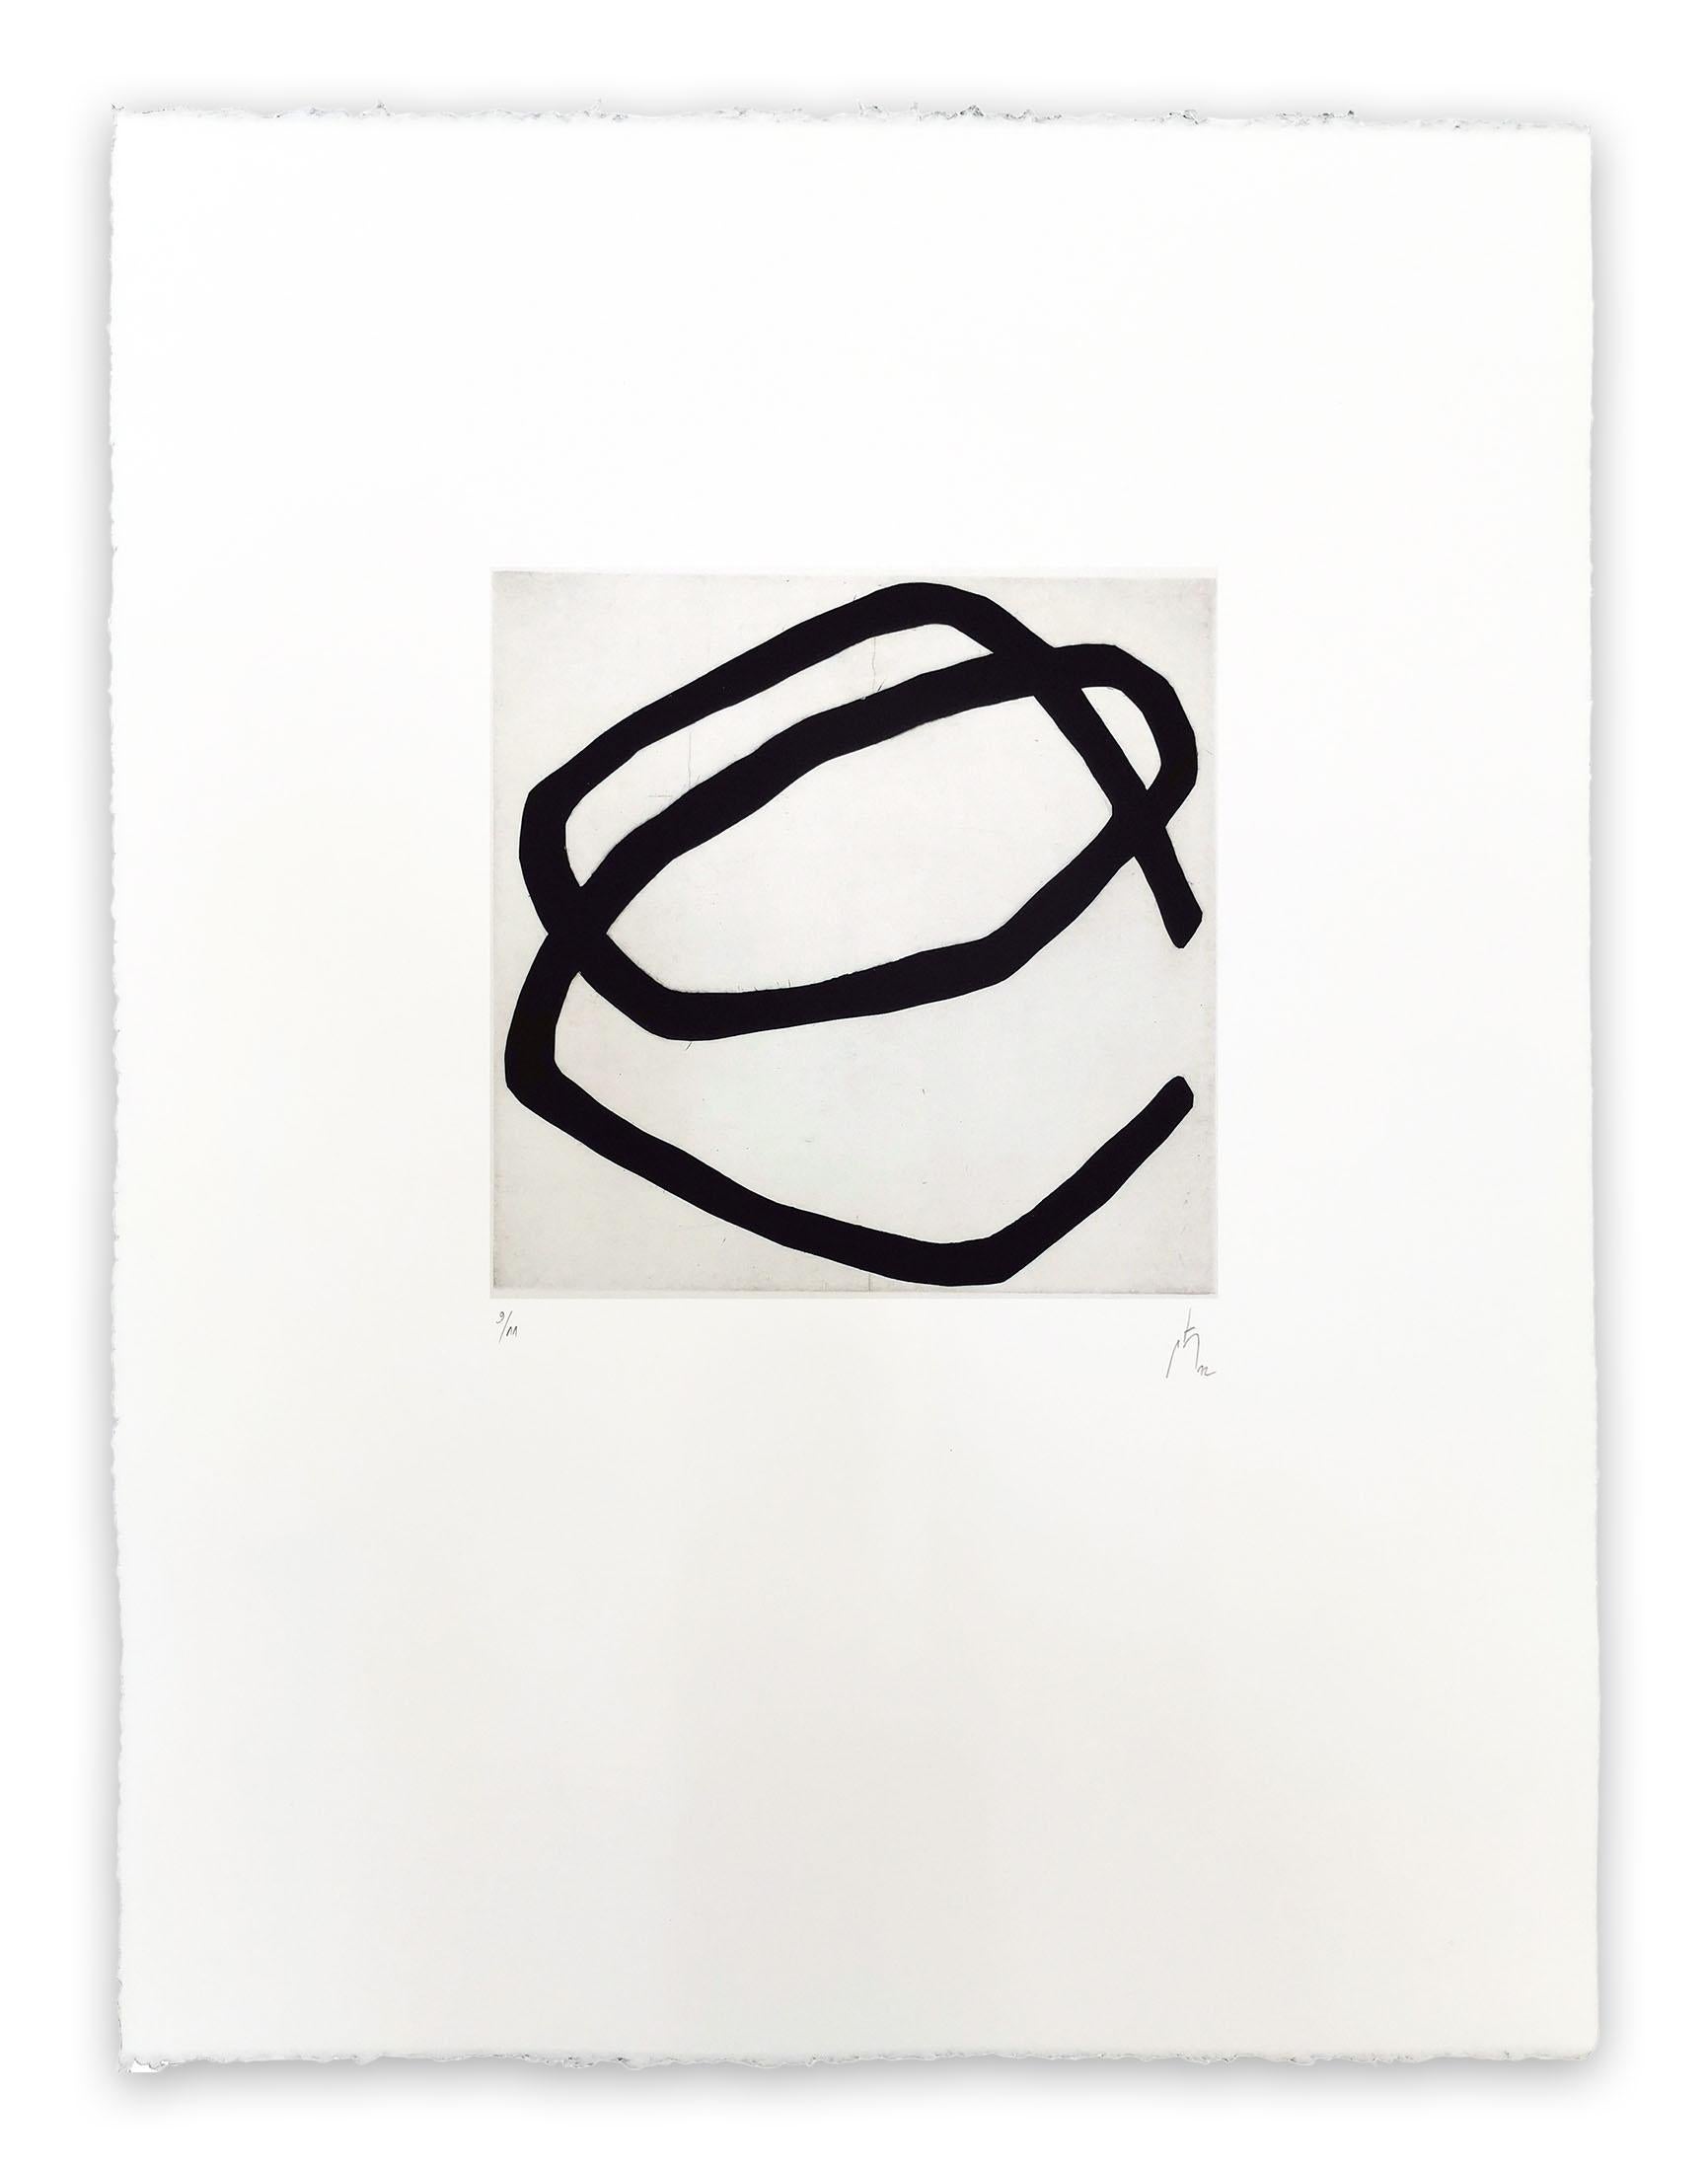 12.5 (Abstrakt), Print, von Pierre Muckensturm